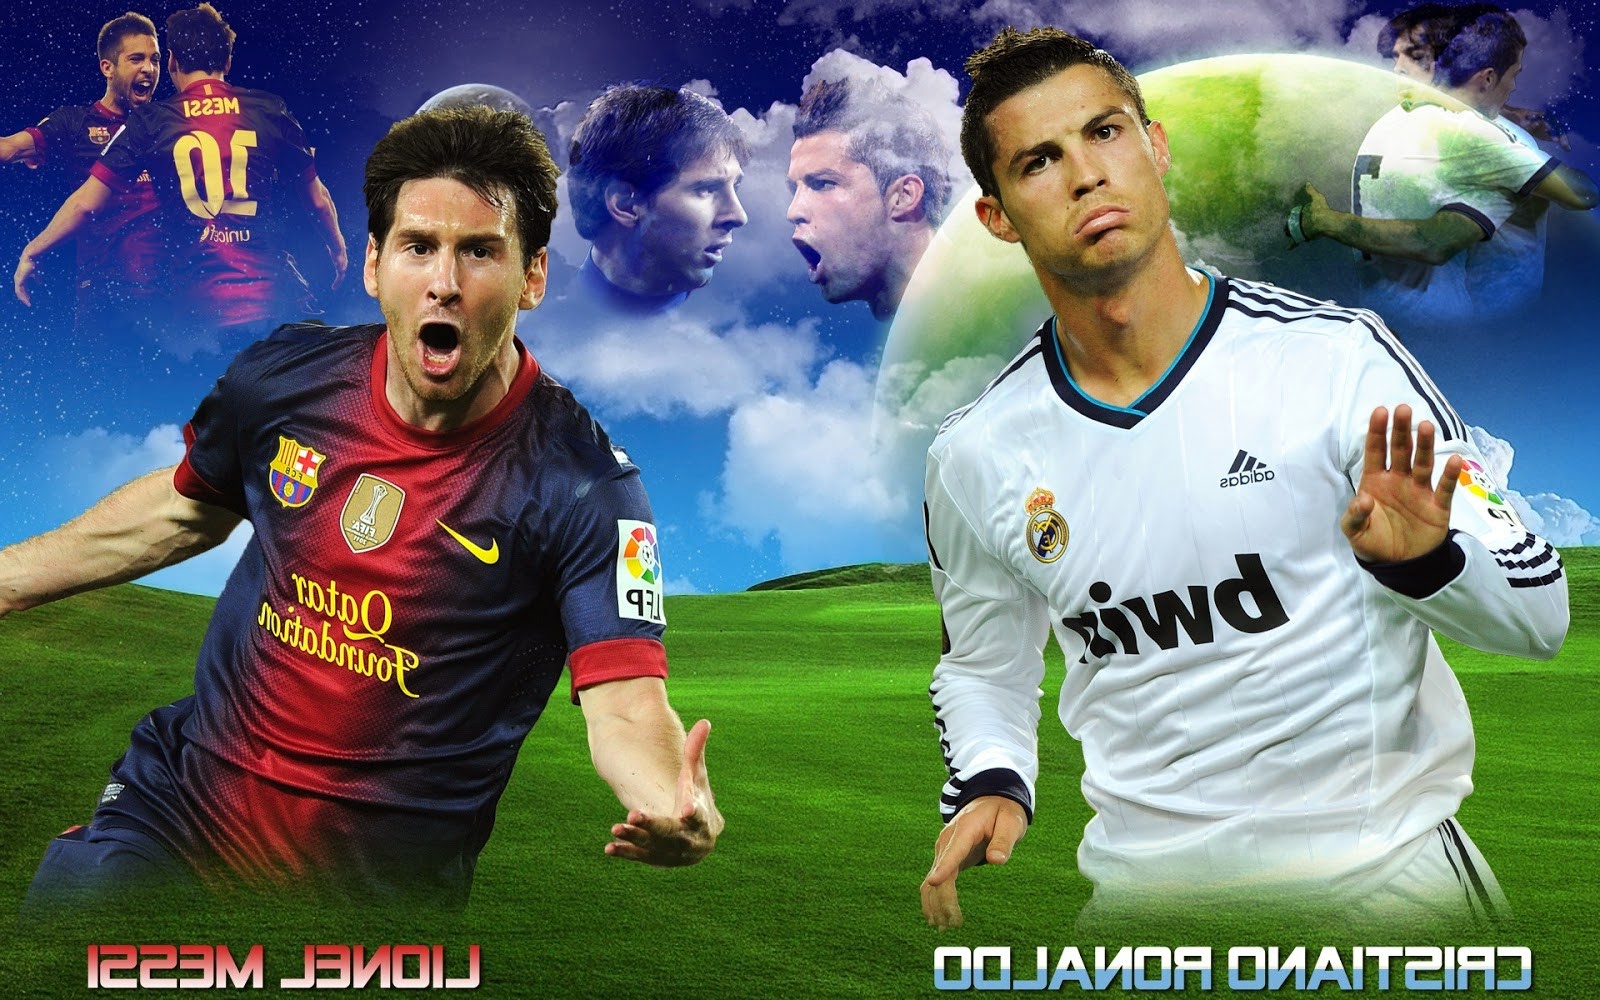 fondo de pantalla de messi y ronaldo,jugador de fútbol,jugador de fútbol,jugador,reglas internacionales de fútbol,fútbol